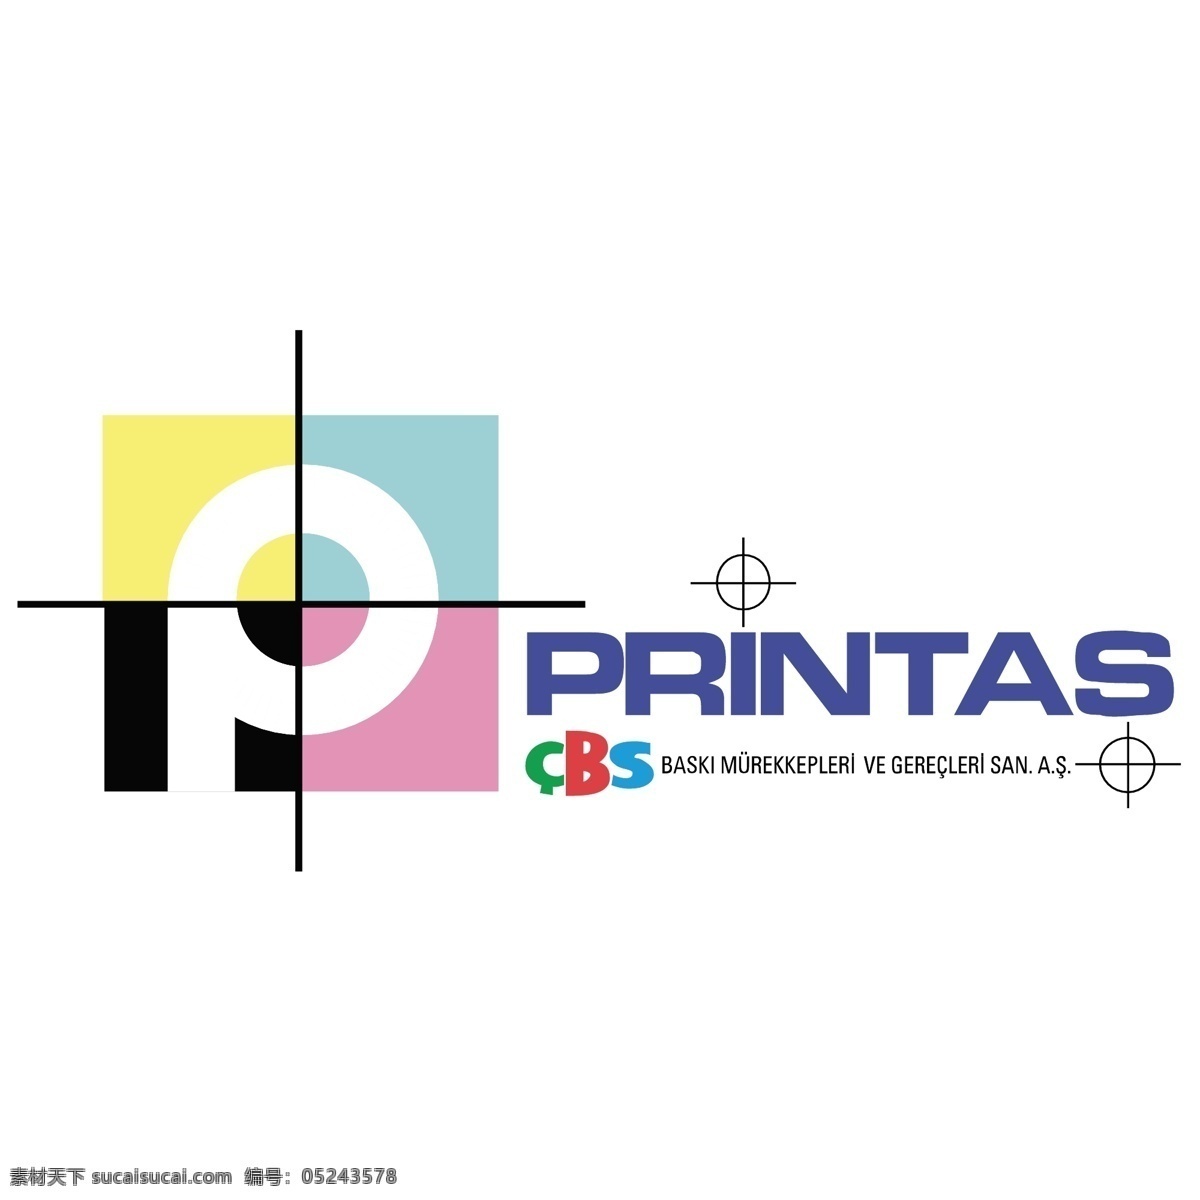 矢量标志 cbs printas 矢量 哥伦比亚 广播 公司 向量 矢量cbs 电视 标志 cbs的标志 建筑家居